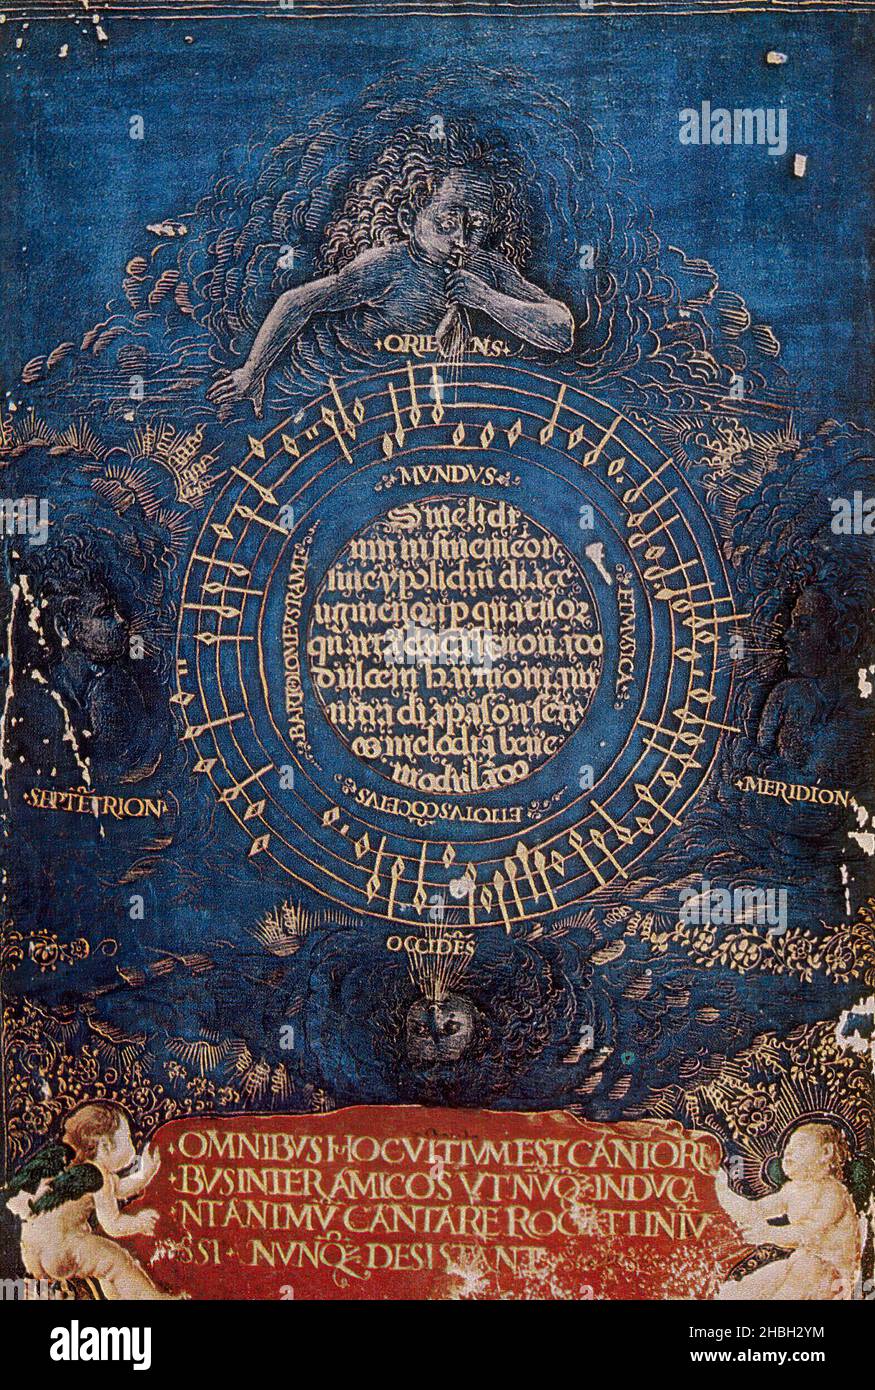 Canon emblemático a cuatro voces Mundus et musica et totus concentusde Bartolomé Ramos de Pareja, incluido en un cancionero florentino  del último cuarto del siglo XV. Stock Photo